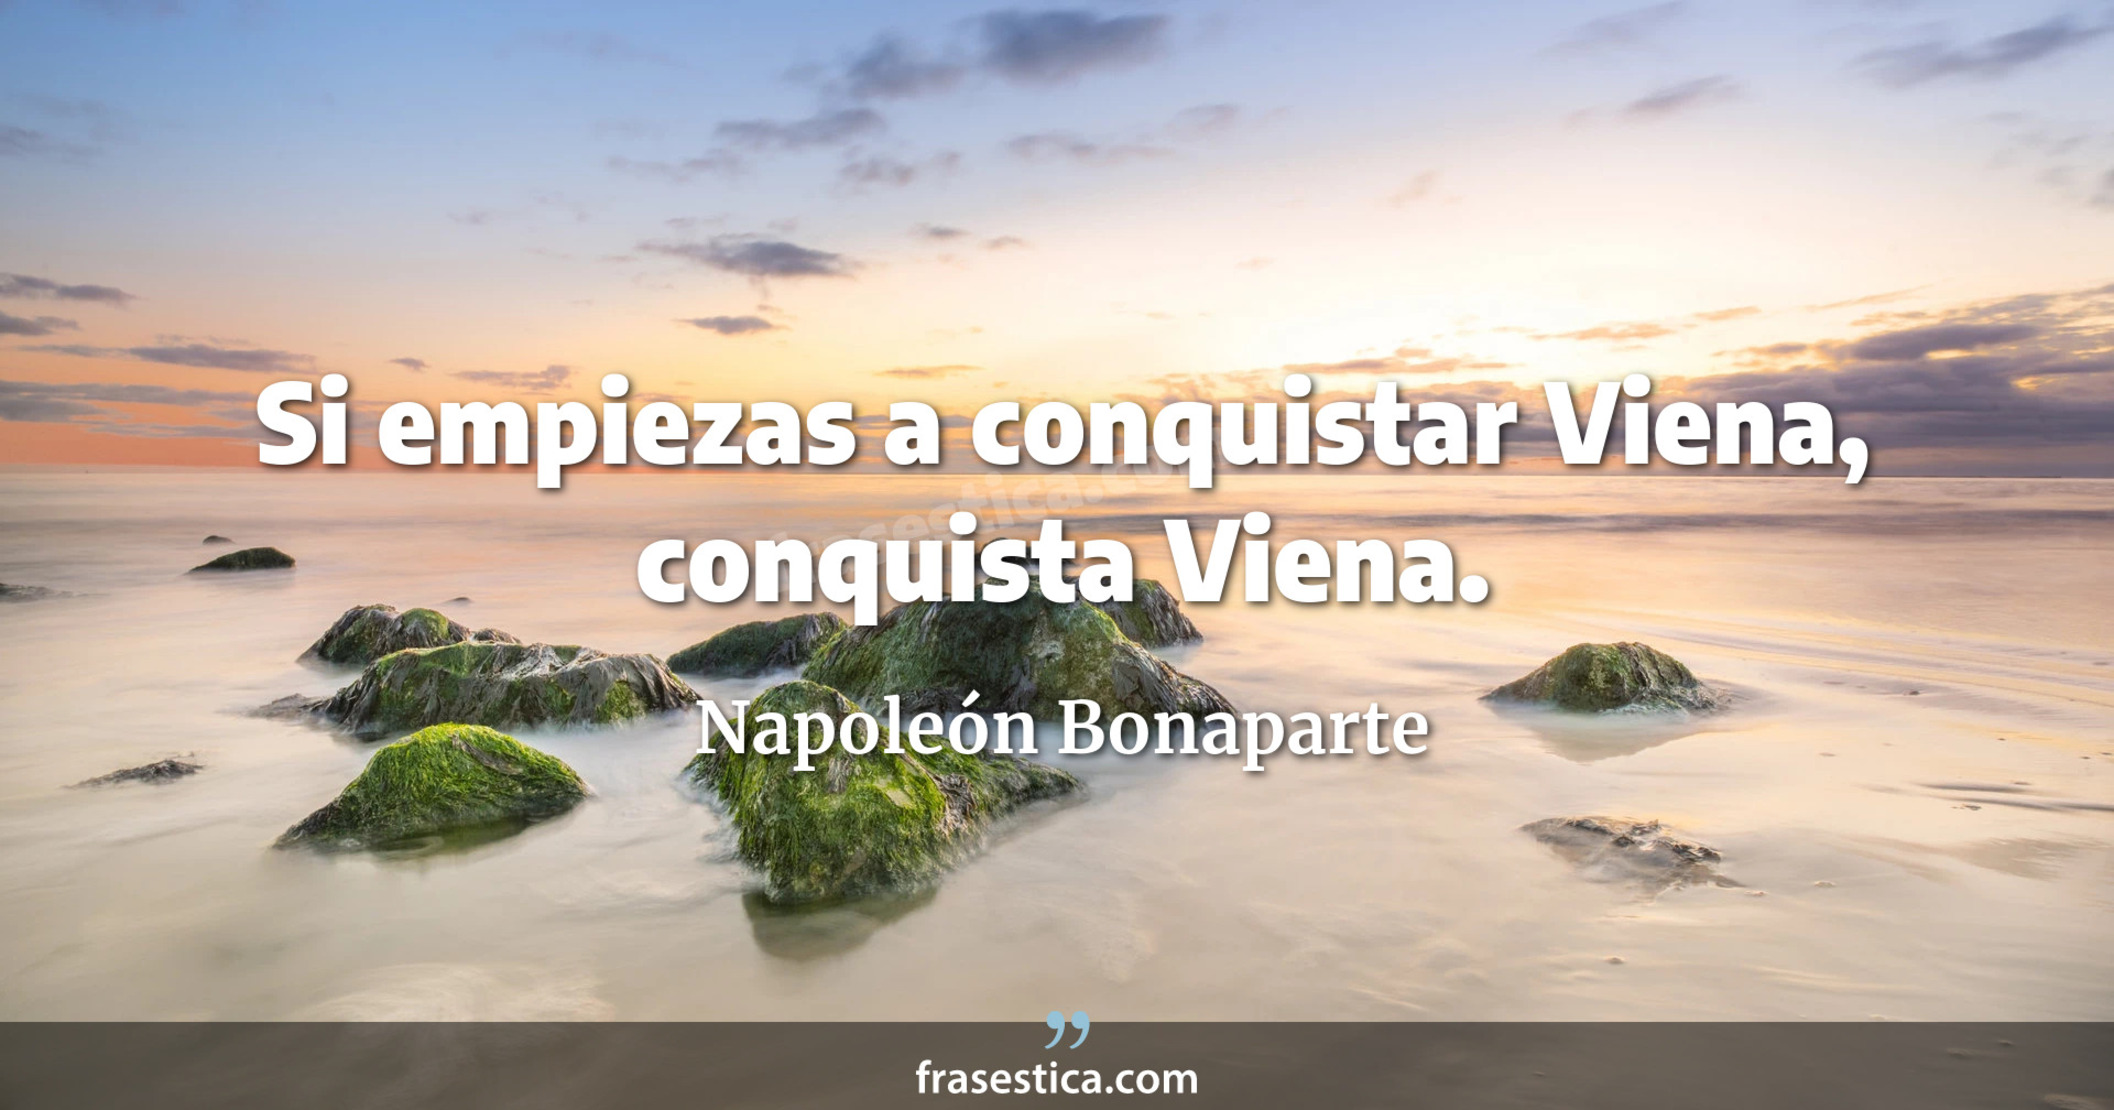 Si empiezas a conquistar Viena, conquista Viena. - Napoleón Bonaparte